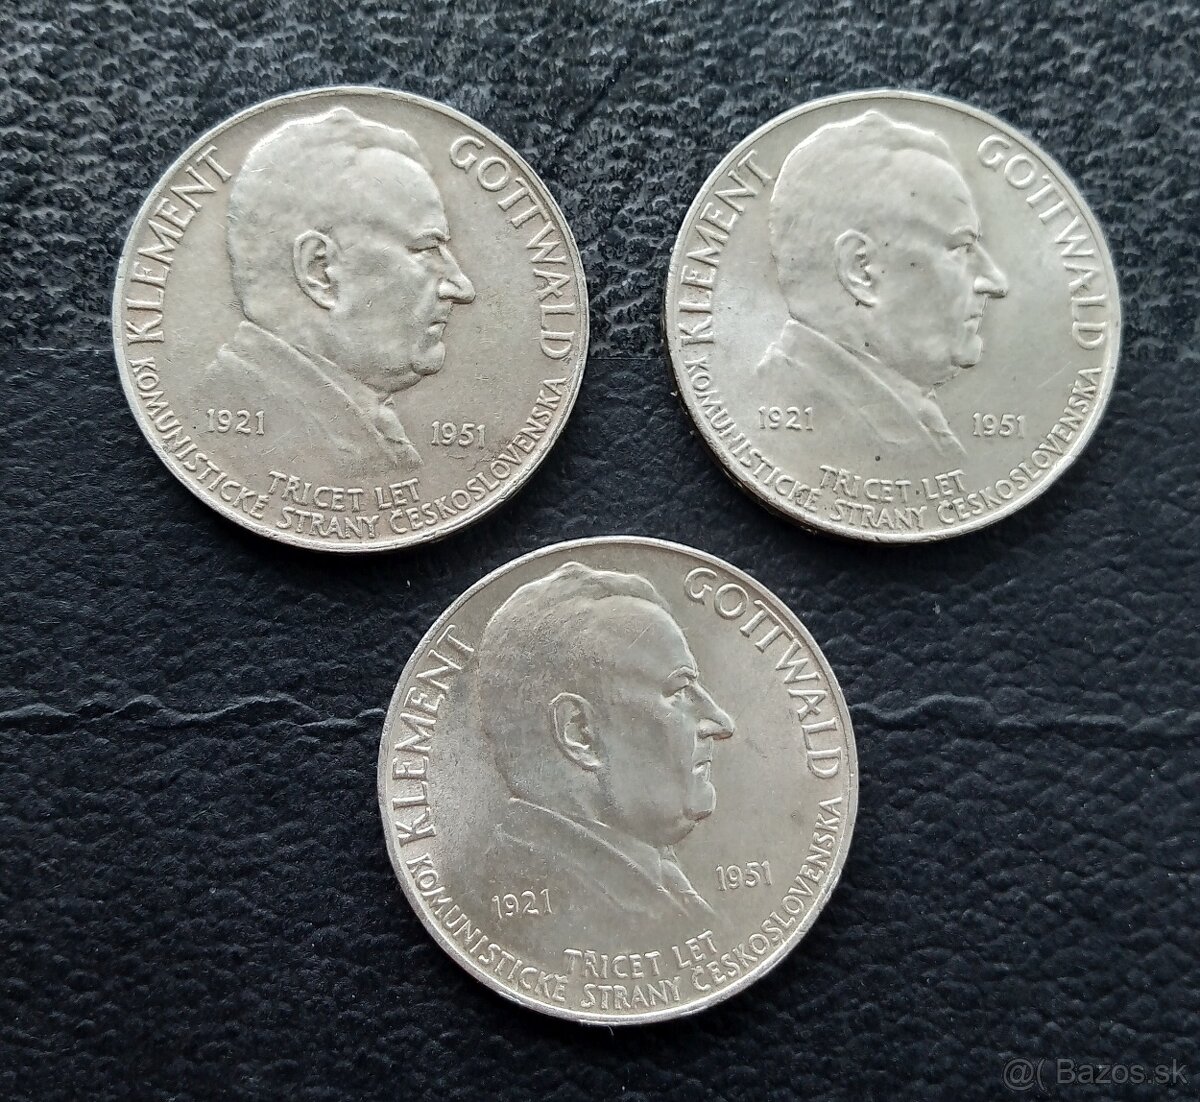 strieborne mince - Republika Československá /1949,1951/